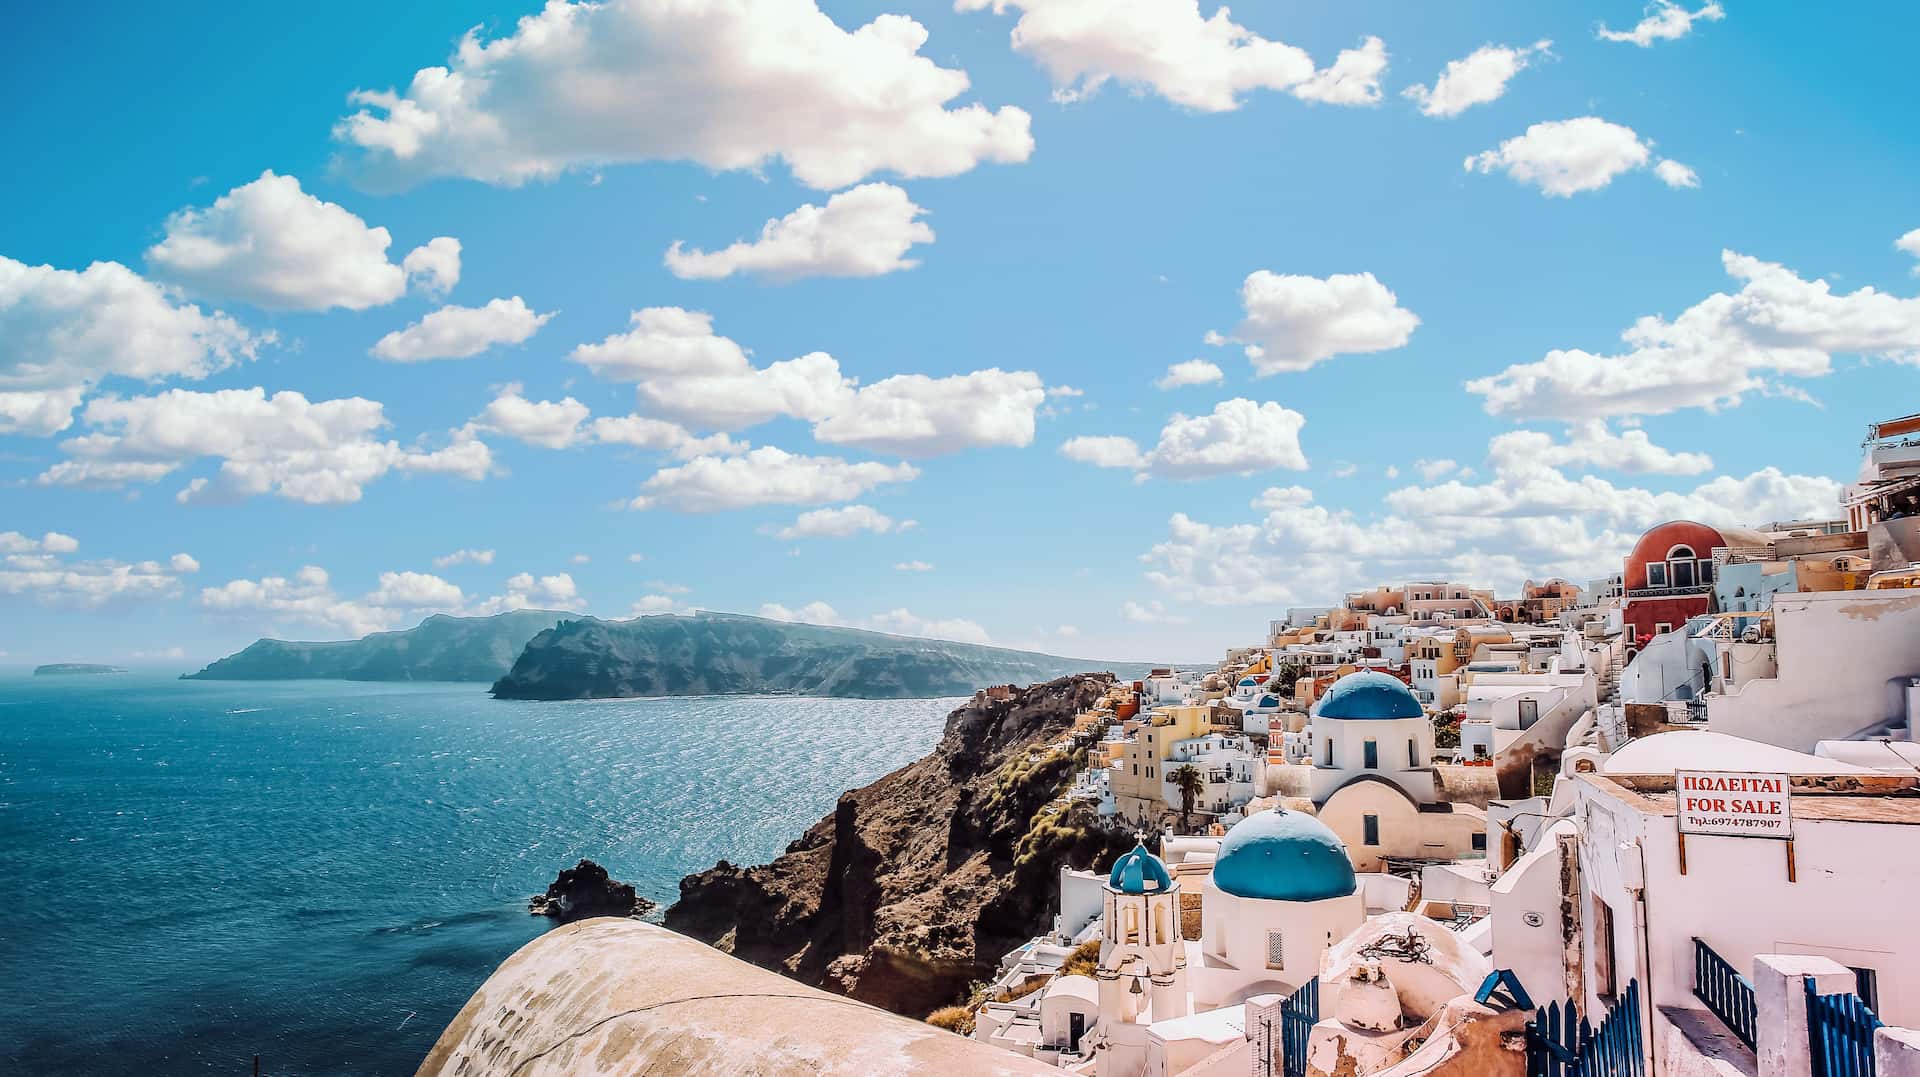 Σαντορίνη: Η επόμενη στάση της ηλεκτροκίνησης στη νησιωτική Ελλάδα